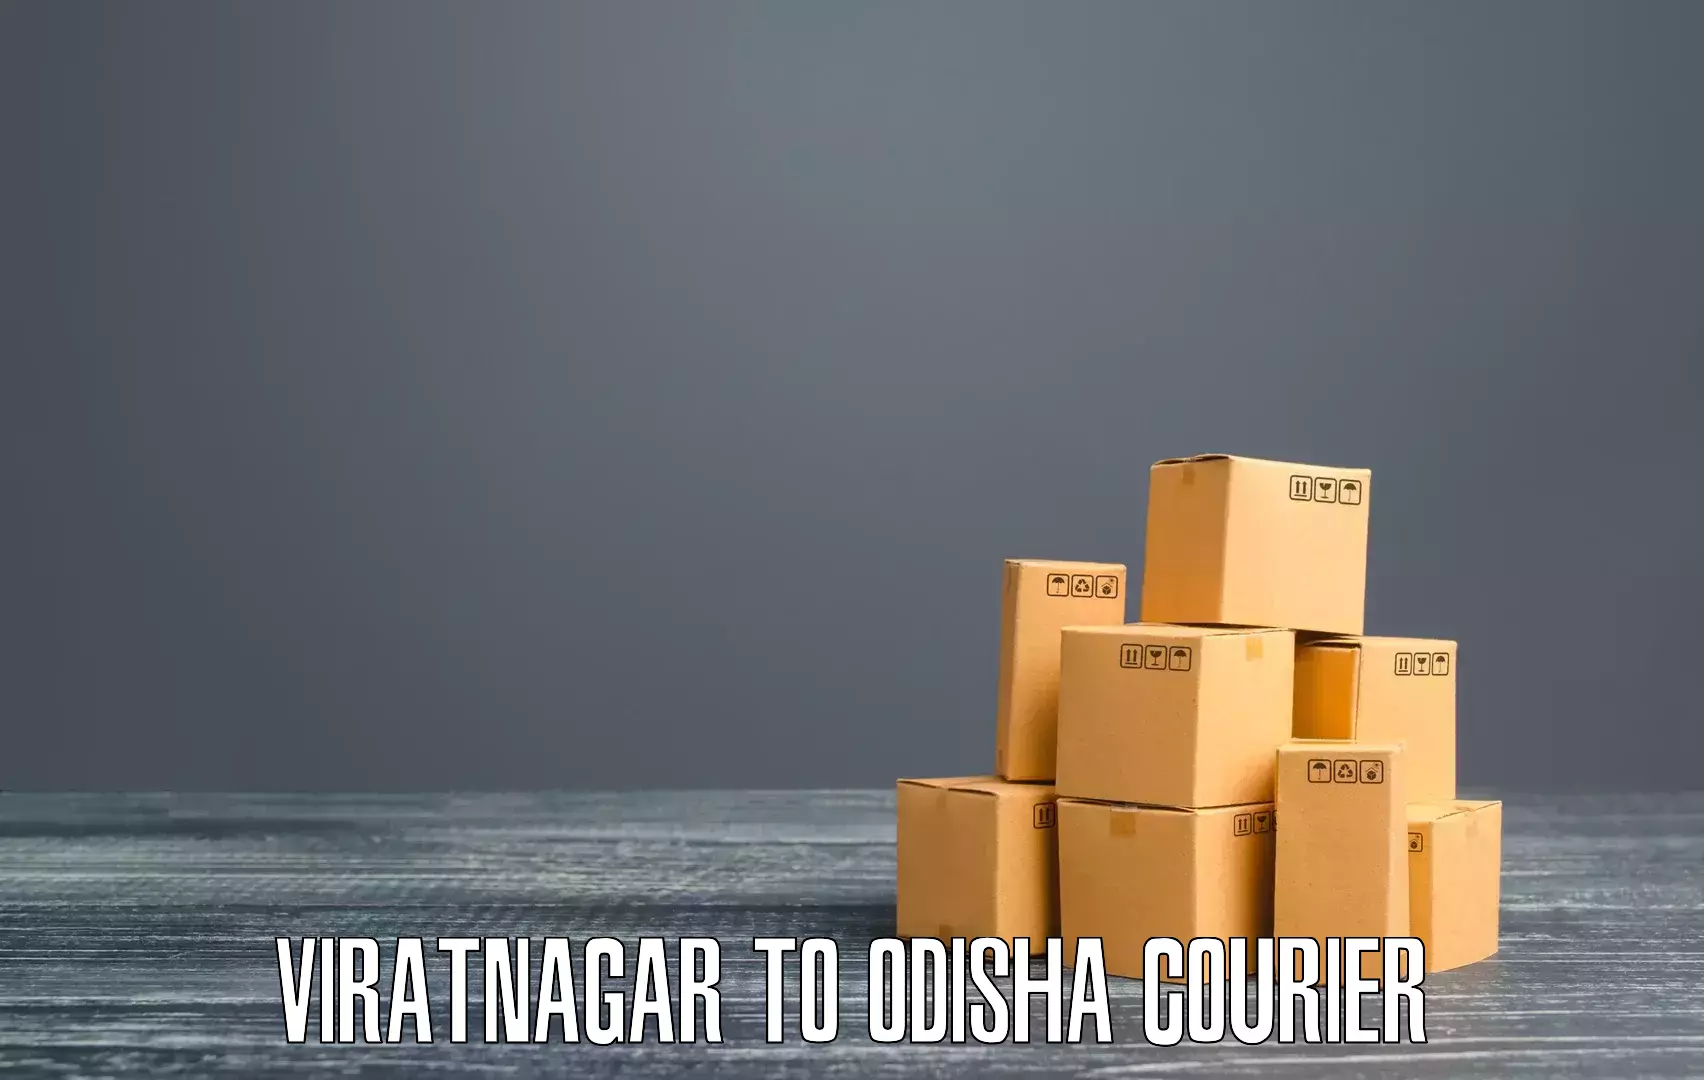 Global parcel delivery Viratnagar to Odisha